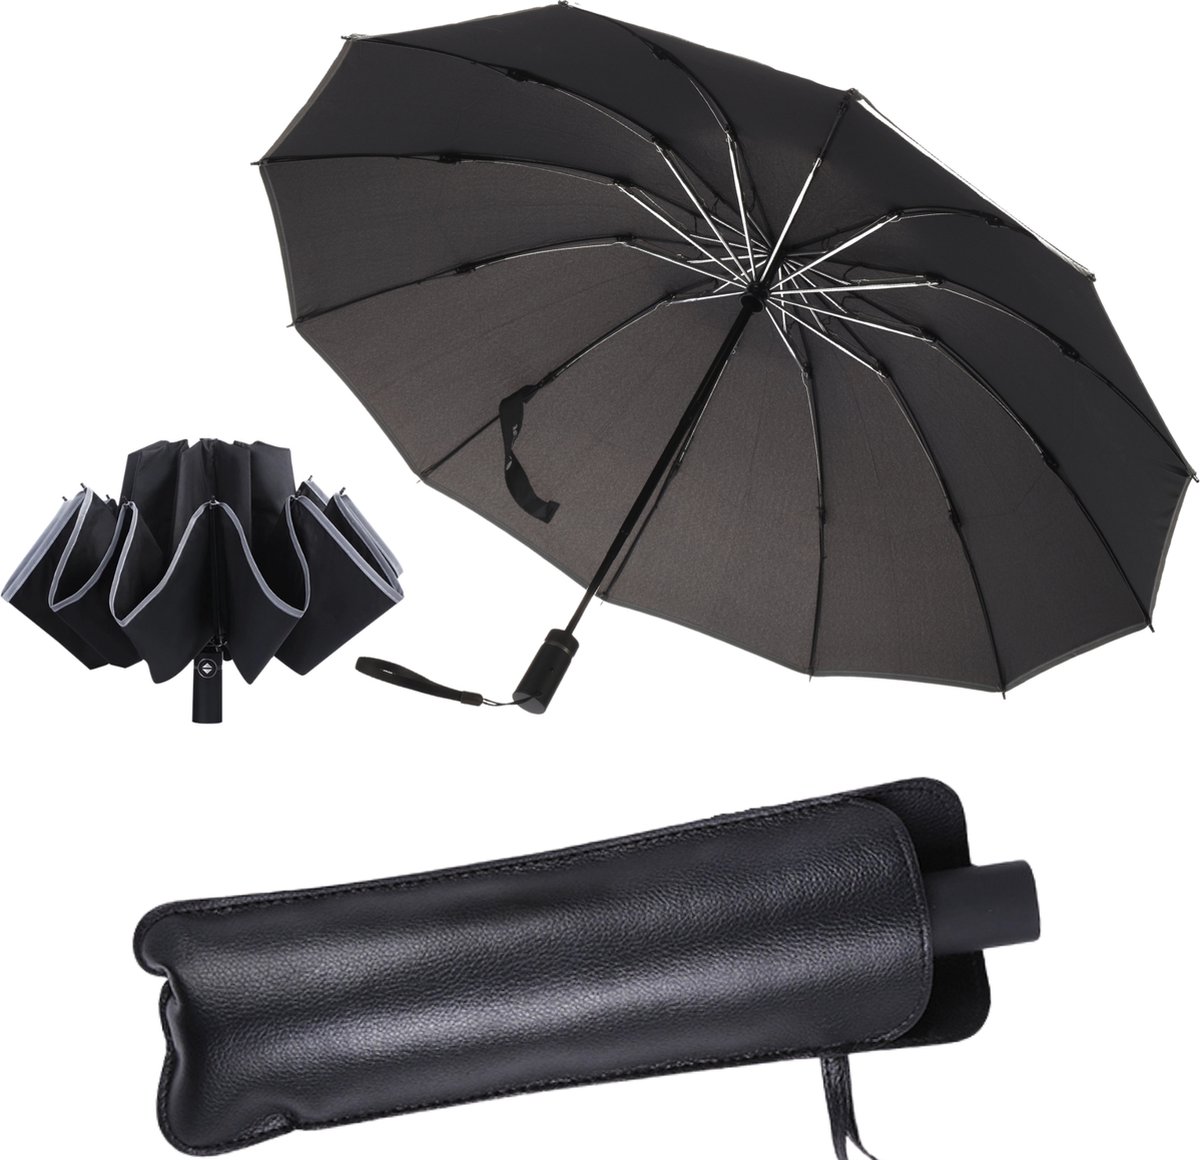 Stormparaplu - Opvouwbaar - 105 CM - Paraplu - automatisch in en uit klapbaar - Stormbestendig tot 140 km/h - Luxe beschermhoes - LOOXOLIFE